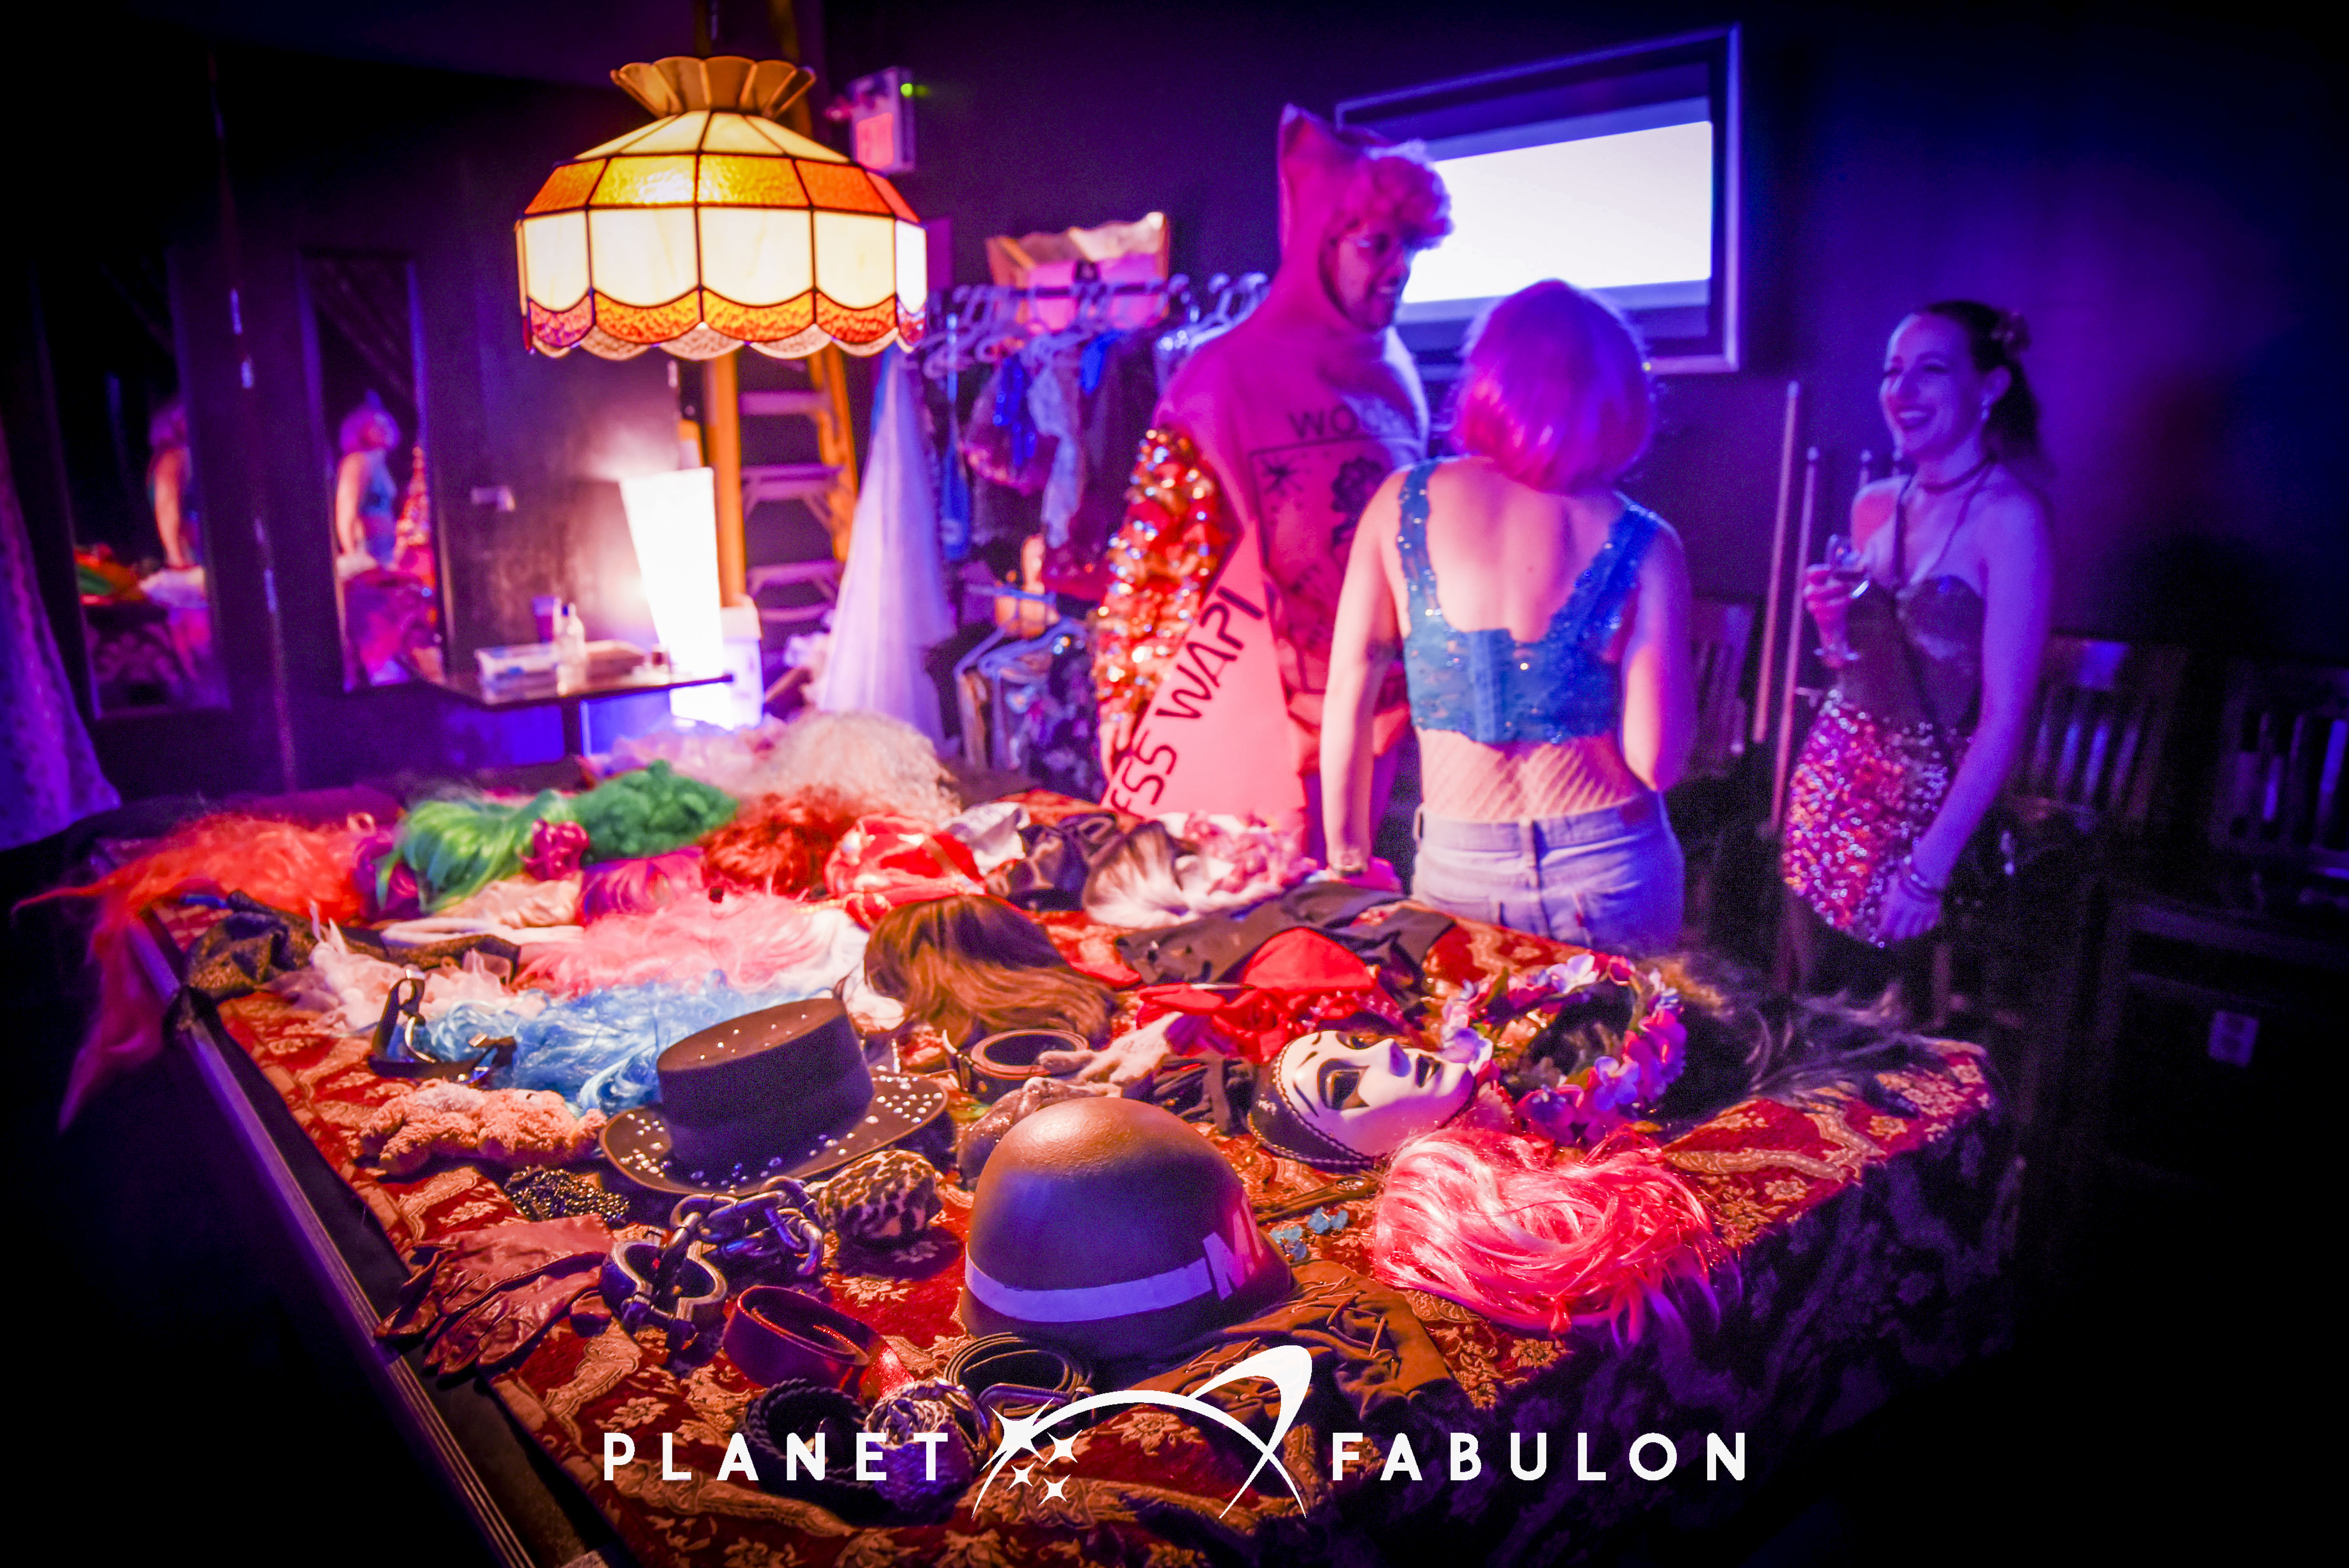 Fabulon Five – Planet Fabulon